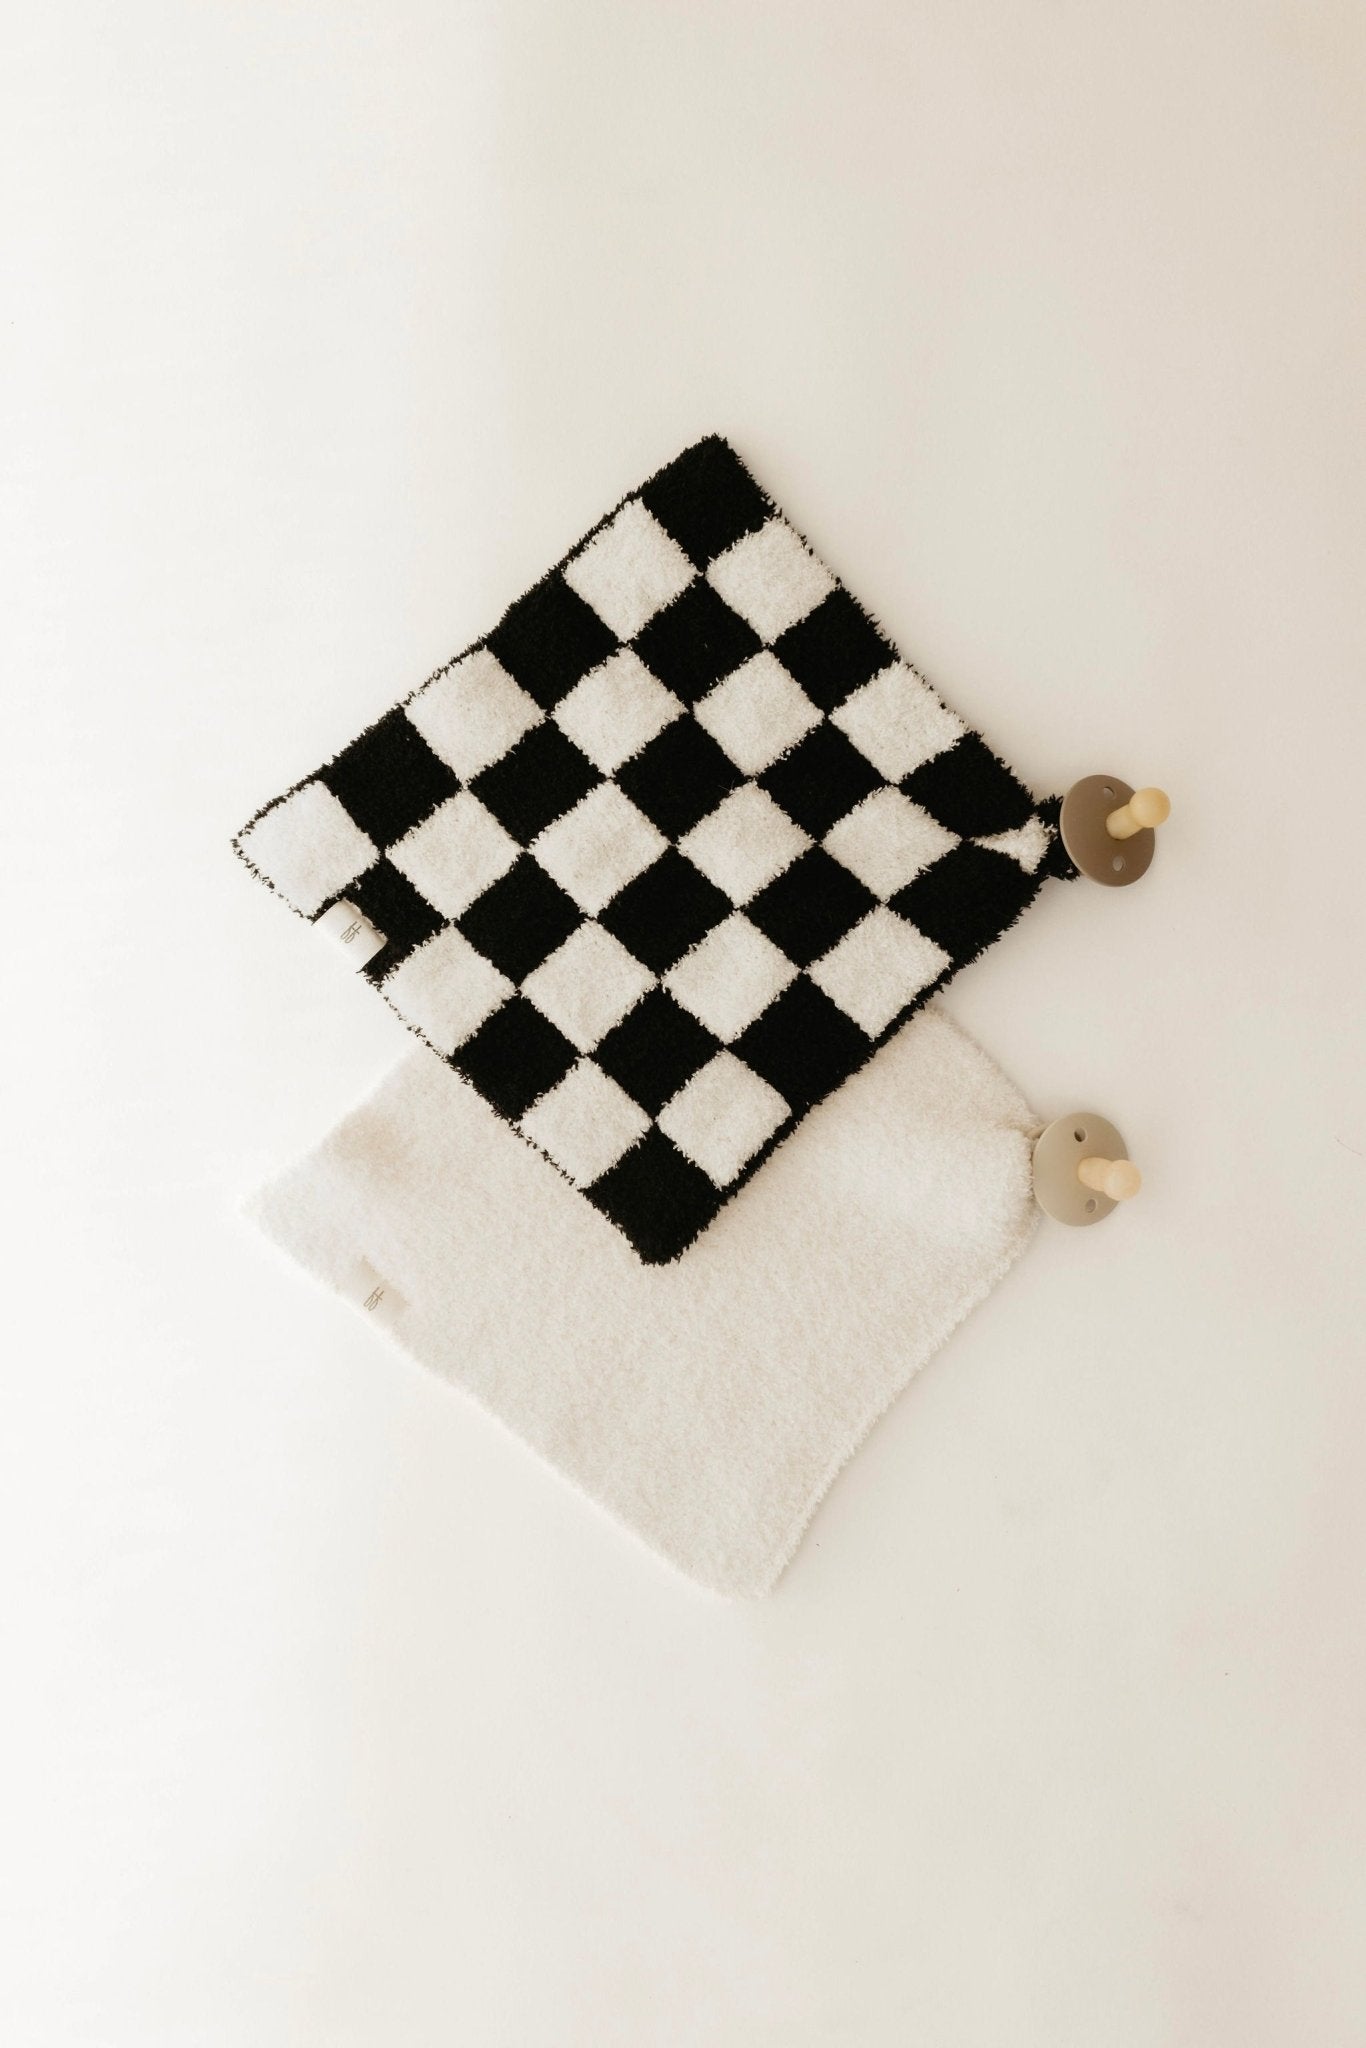 Black & White Checkered | Lovey - Mack & Harvie